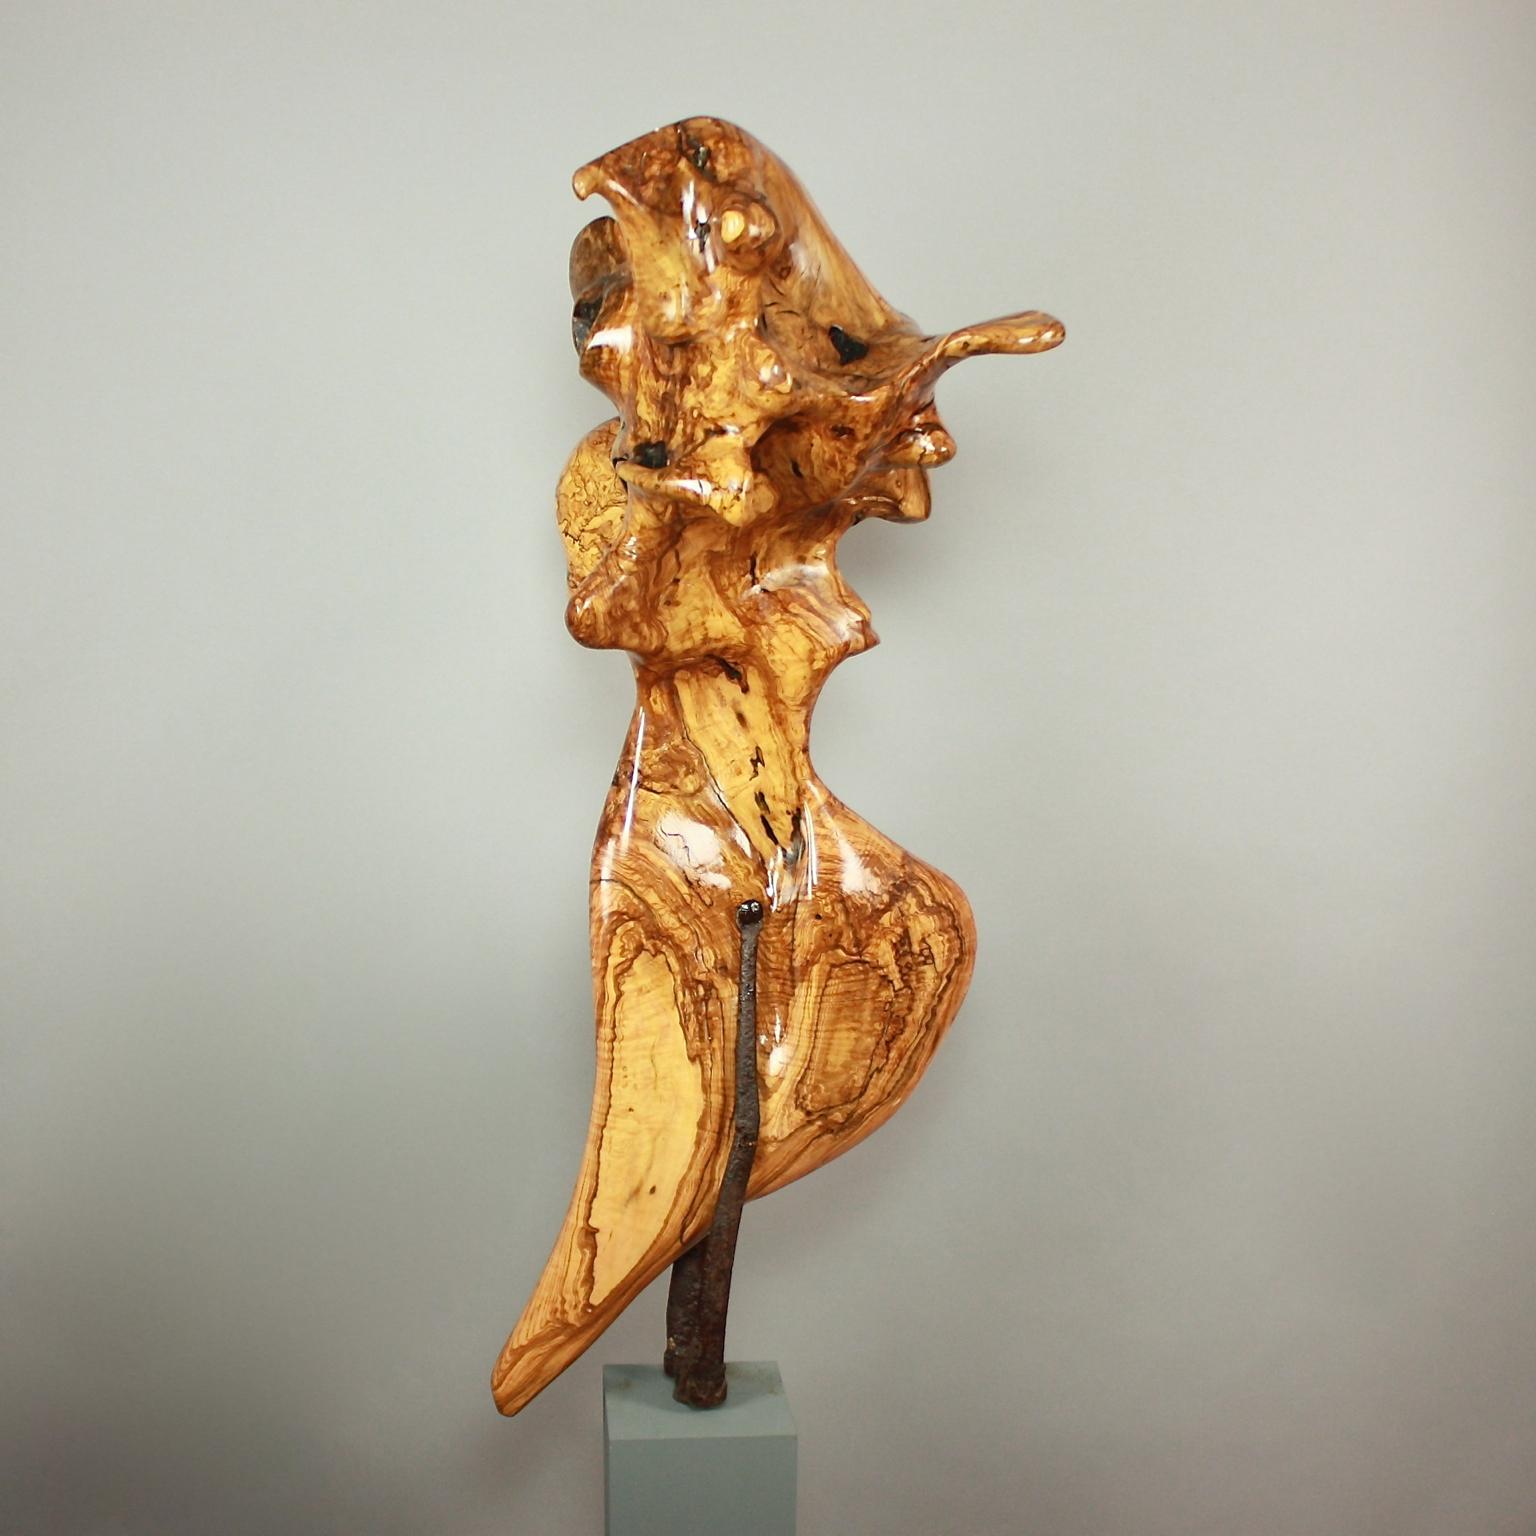 Eine abstrakte Skulptur aus Olivenholz von einem unbekannten Künstler, wahrscheinlich Ende des 20. oder Anfang des 21. Die Skulptur folgt der Maserung des Holzes und bietet mehrere Ansichten der polierten Oberfläche, die die lebendige Maserung